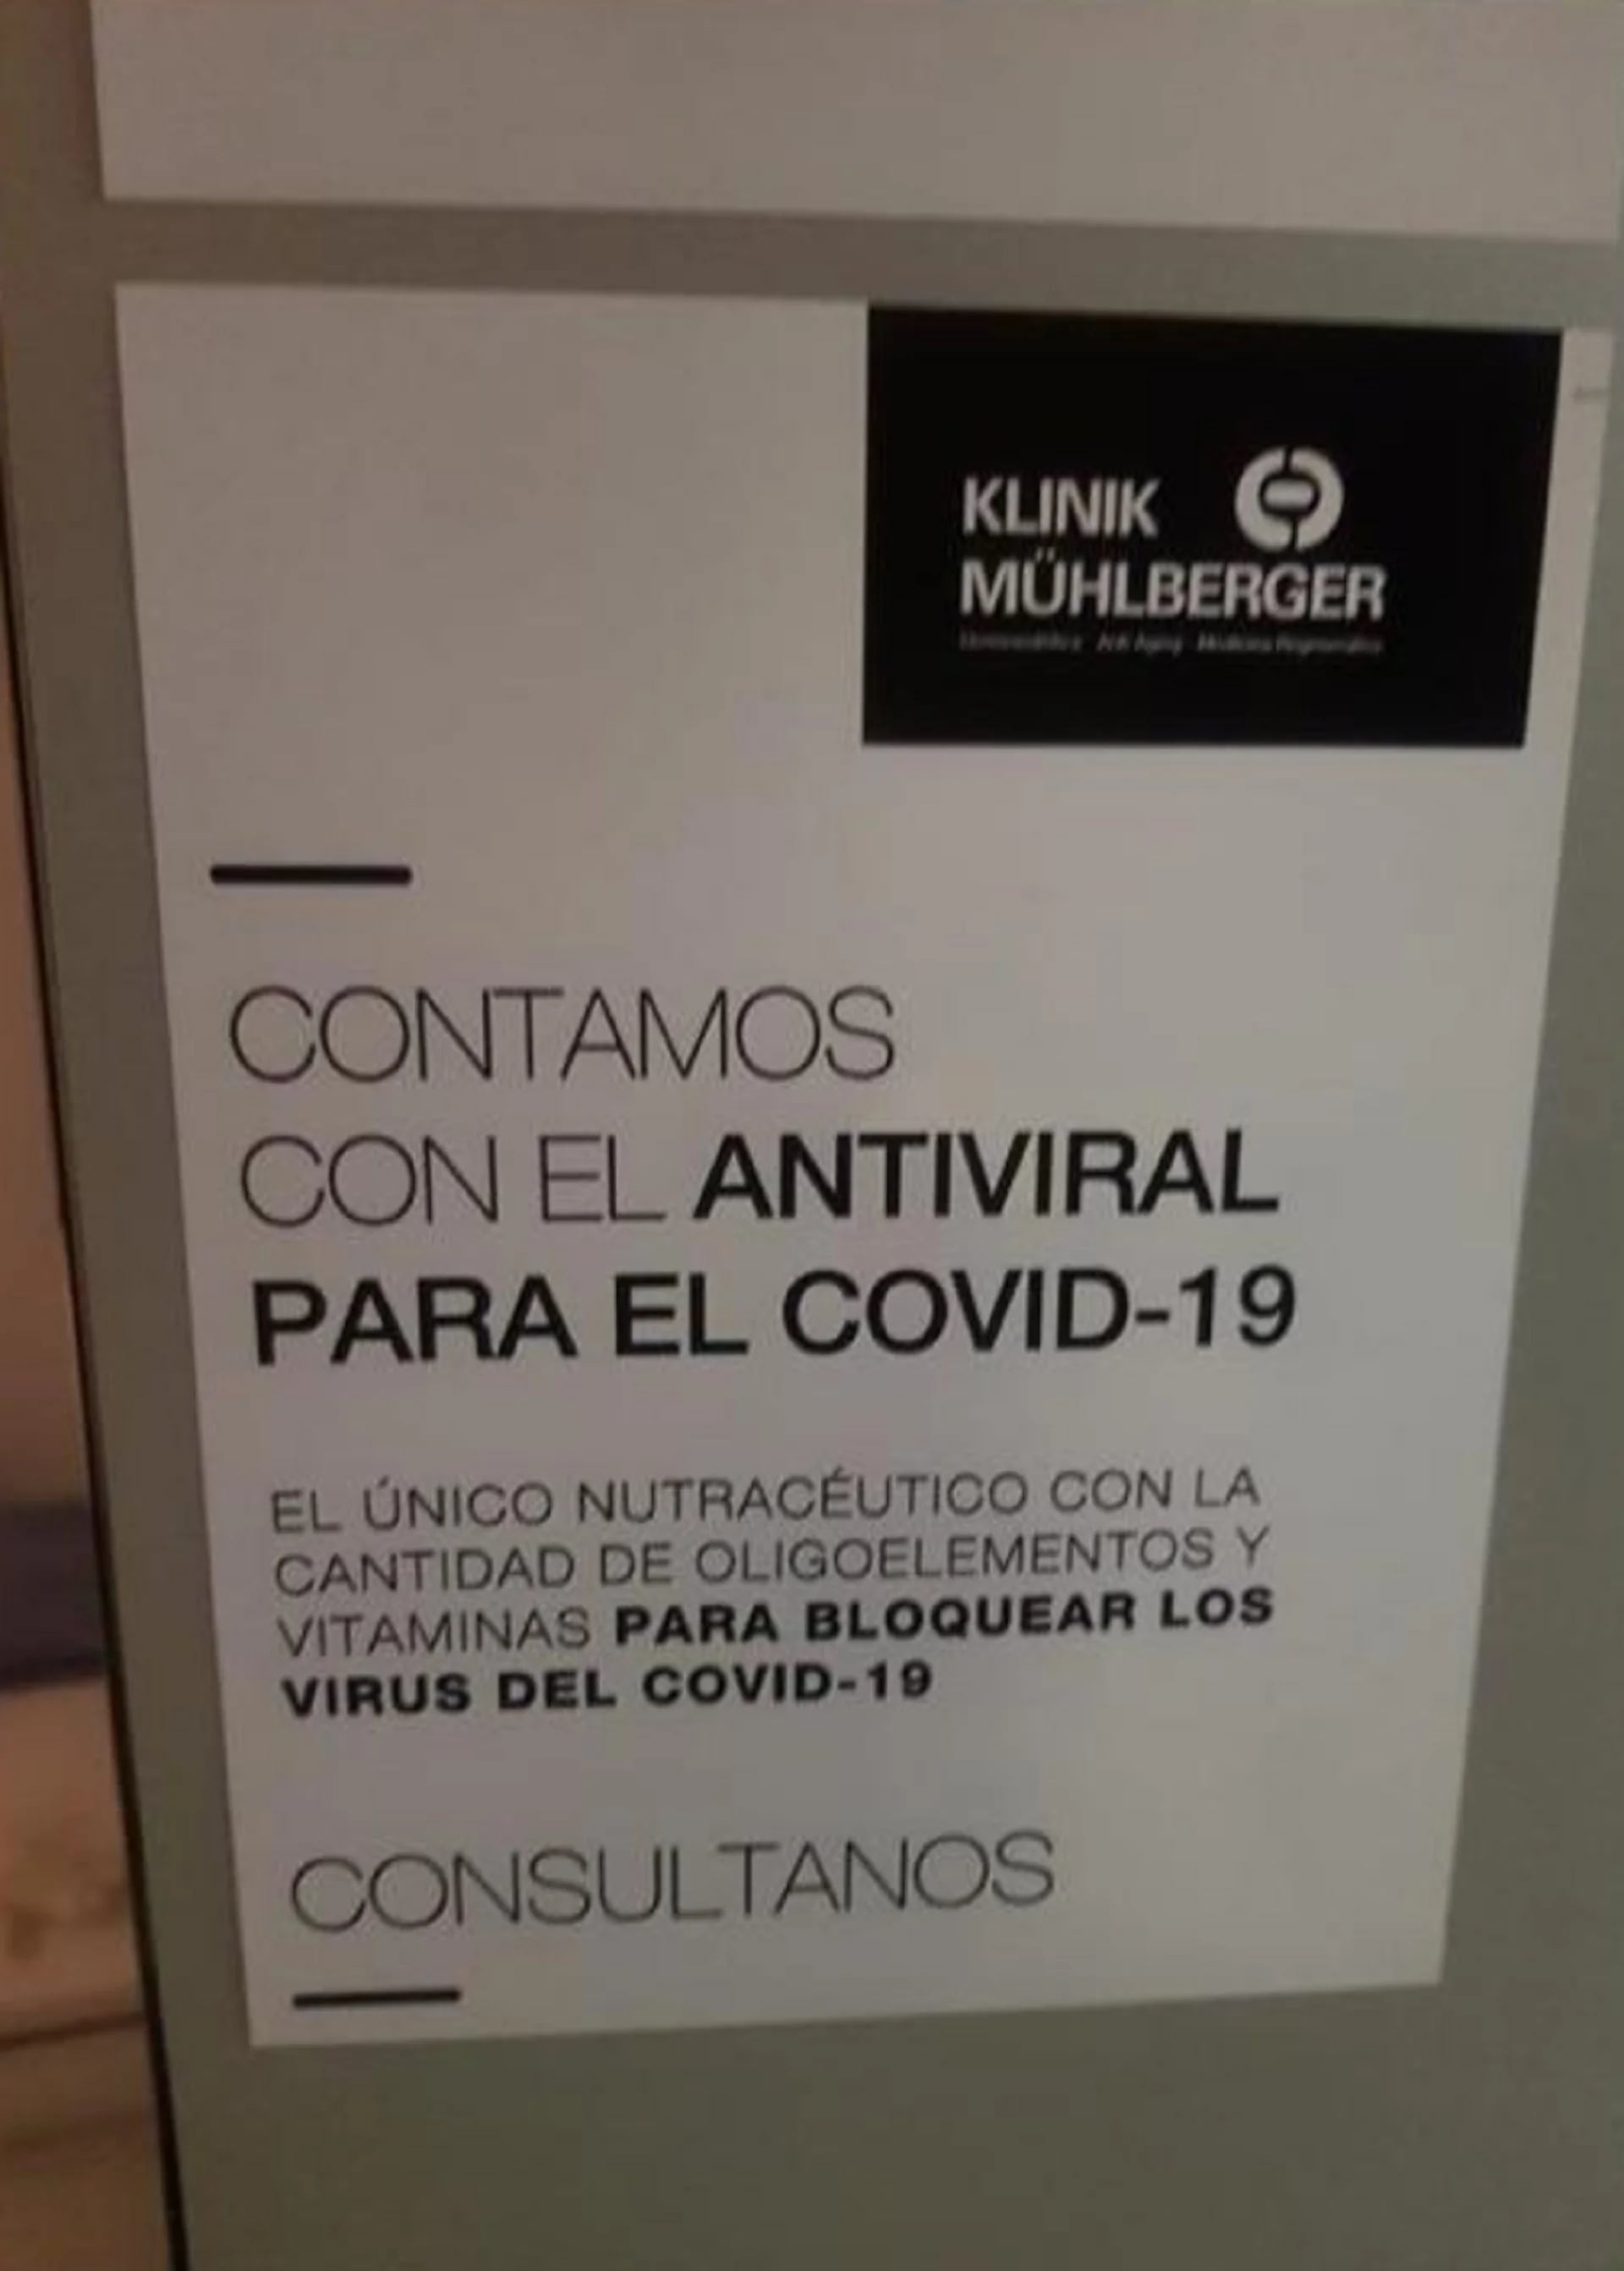 "Contamos con el antiviral para el COVID-19", anunciaba Rubén Mühlberger